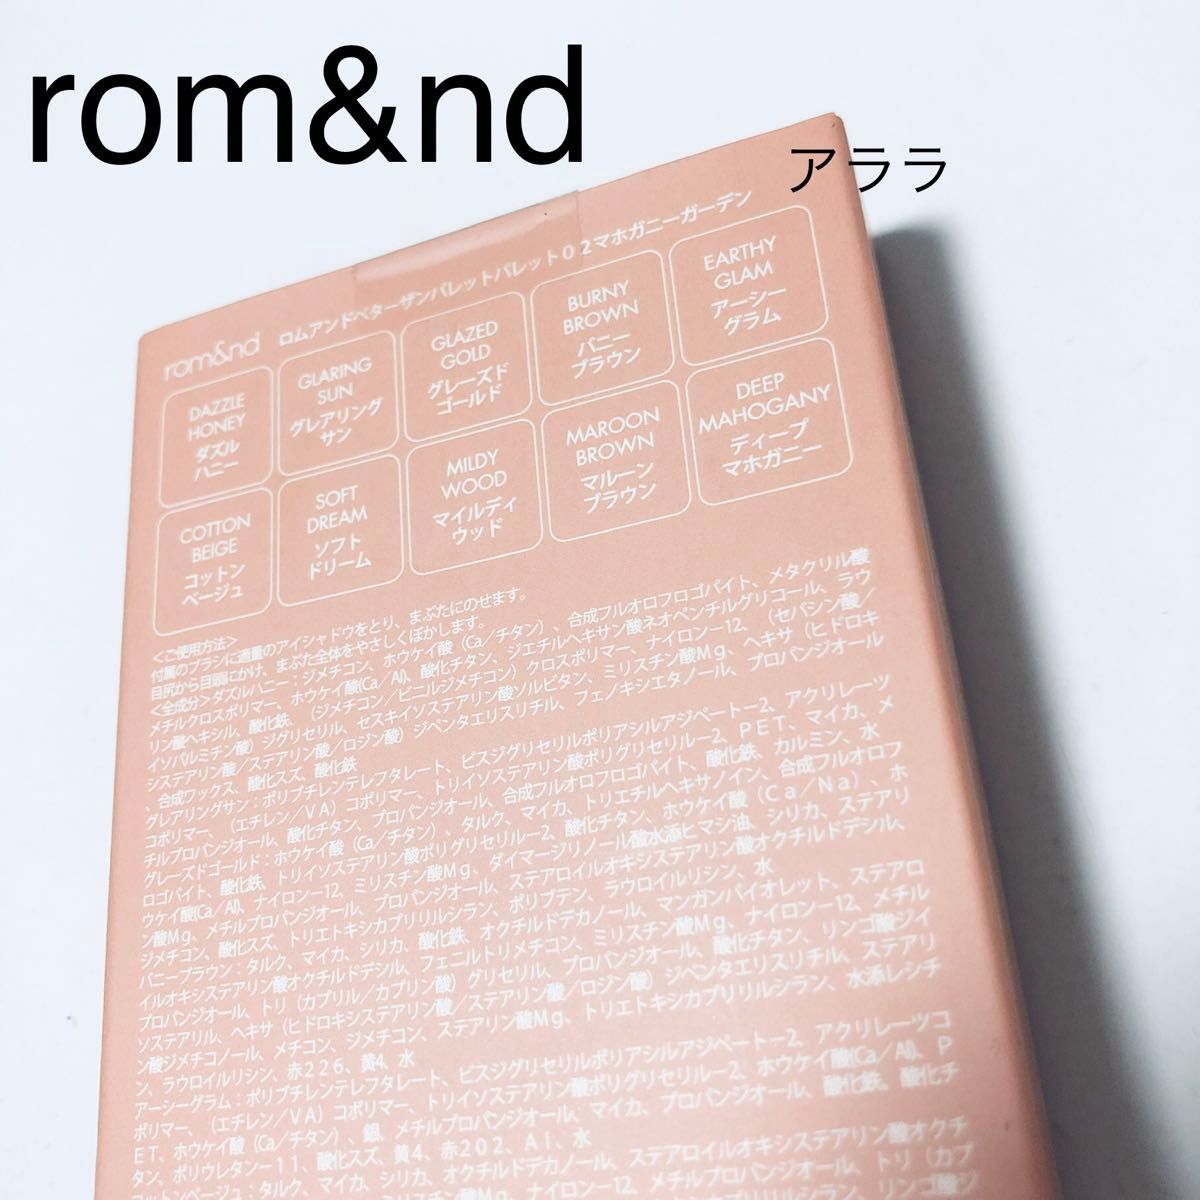 【マホガニーガーデン】ロムアンド・新品未開封・ベターザンパレット02・rom&nd・アイシャドウ